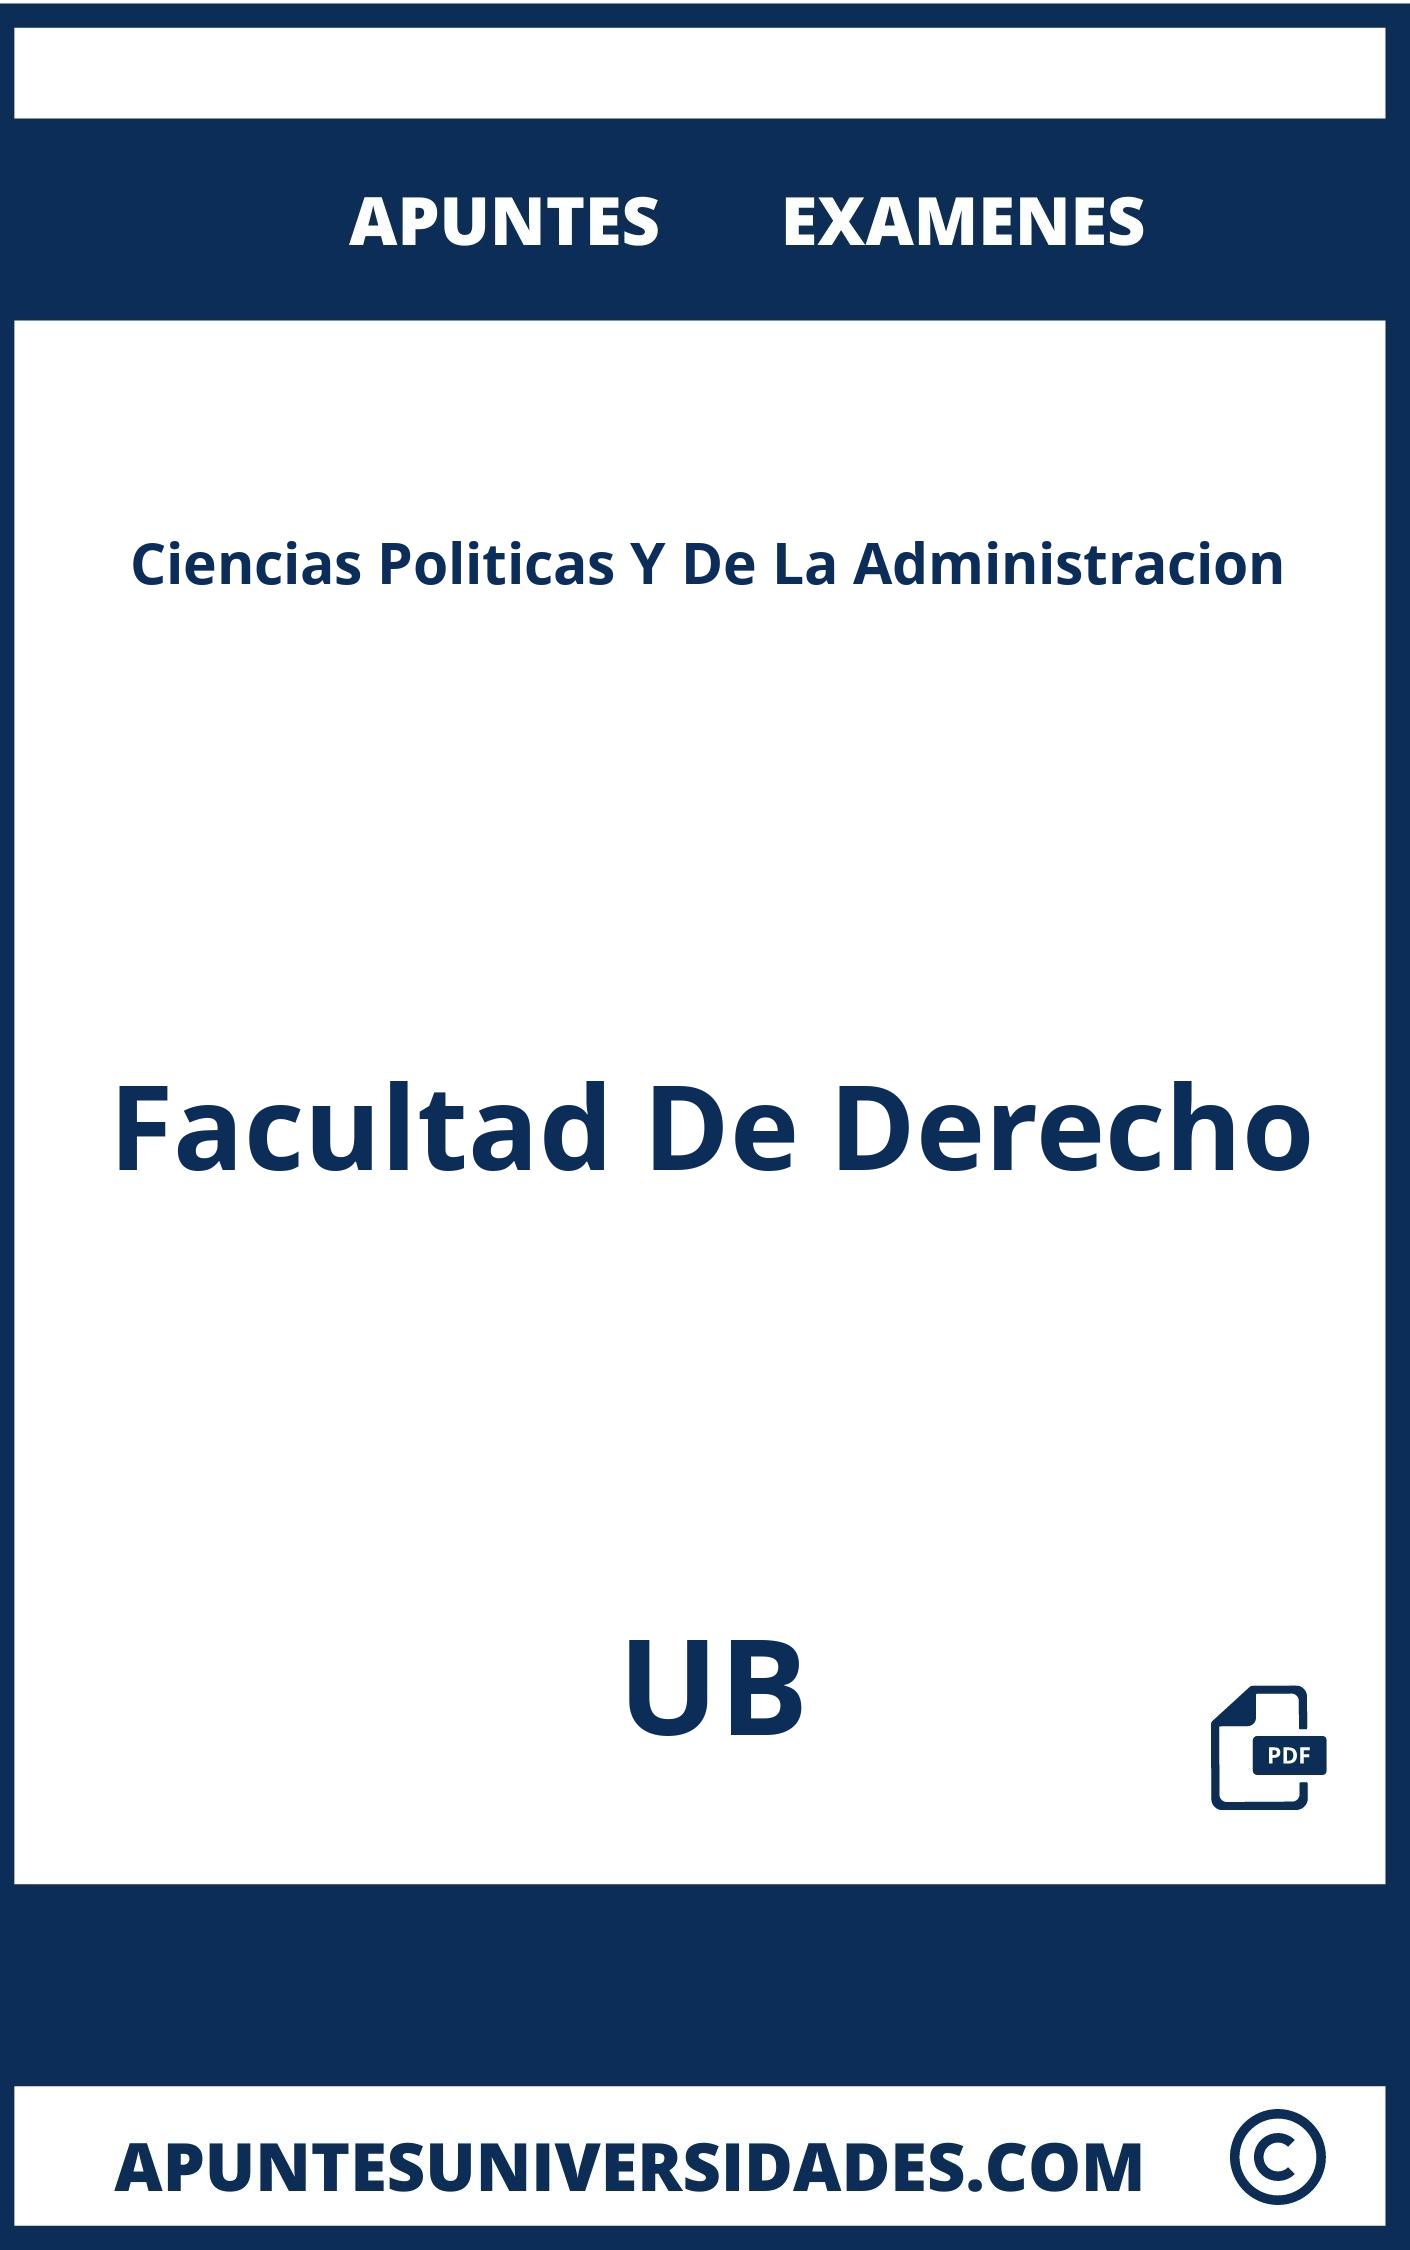 Apuntes y Examenes de Ciencias Politicas Y De La Administracion UB